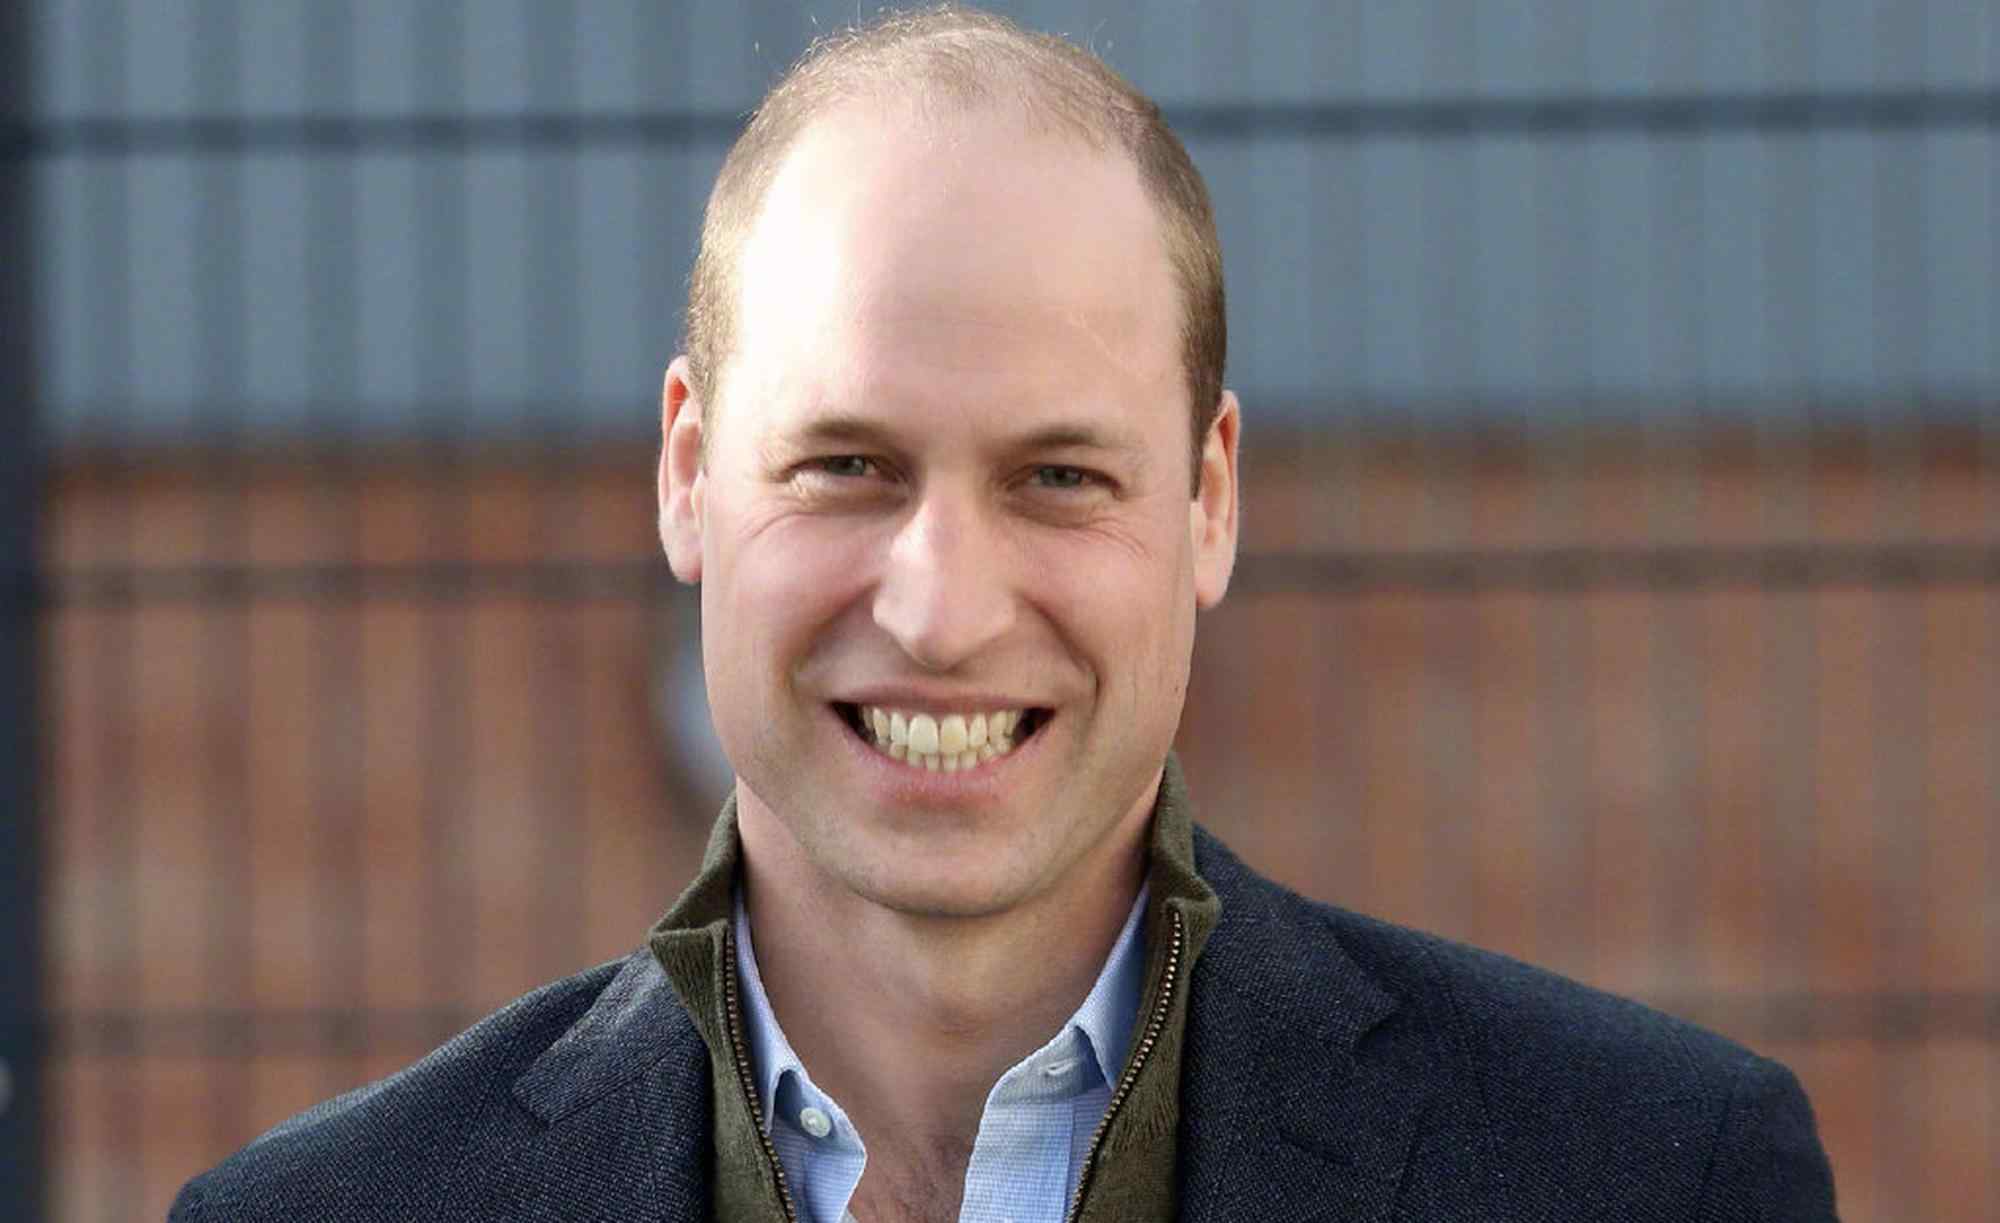 威廉王子被评为最性感秃顶男人 名列榜首遭质疑